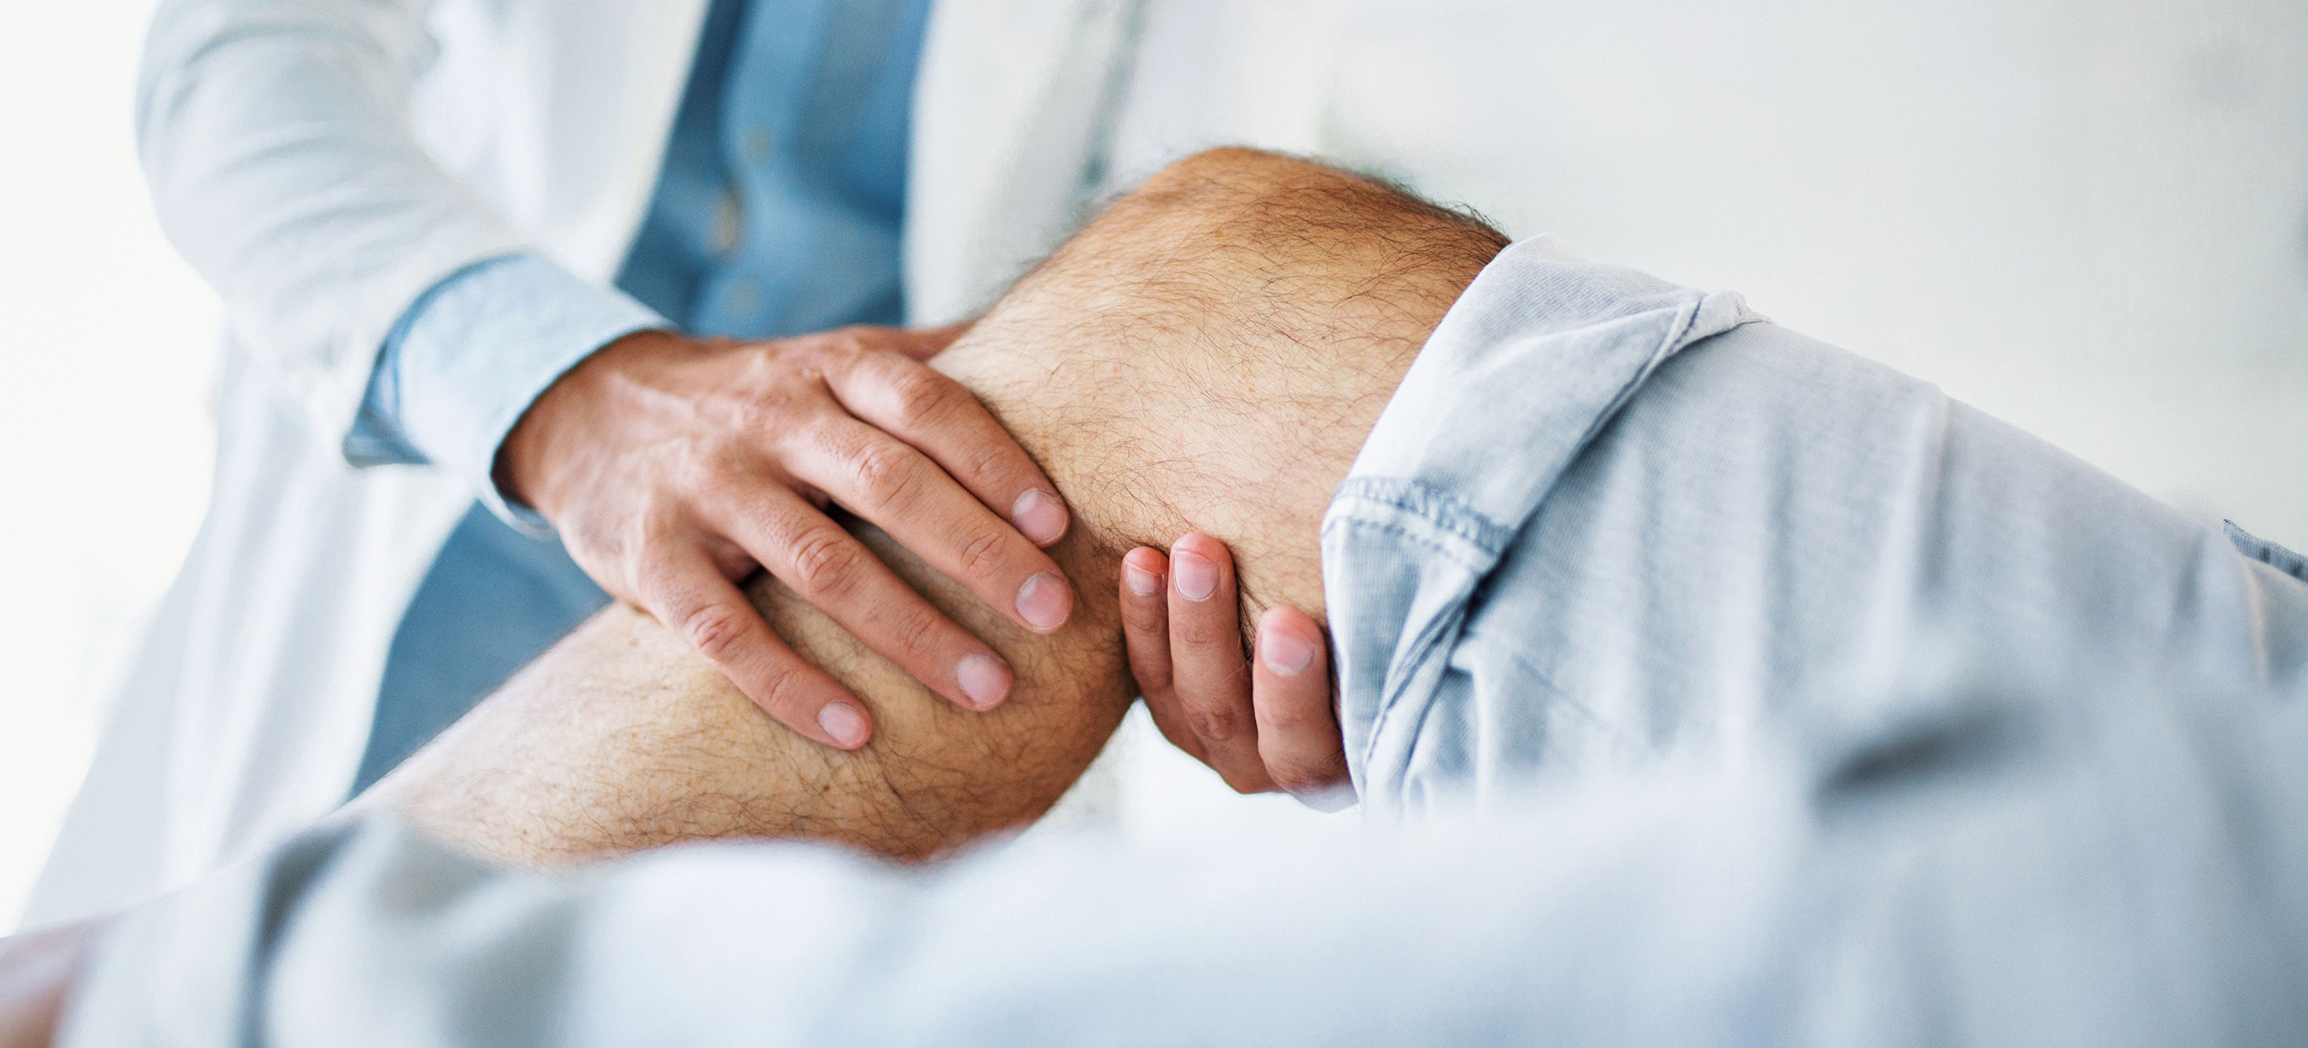 Behandlung bei Schmerzen und nach Verletzungen am Knie